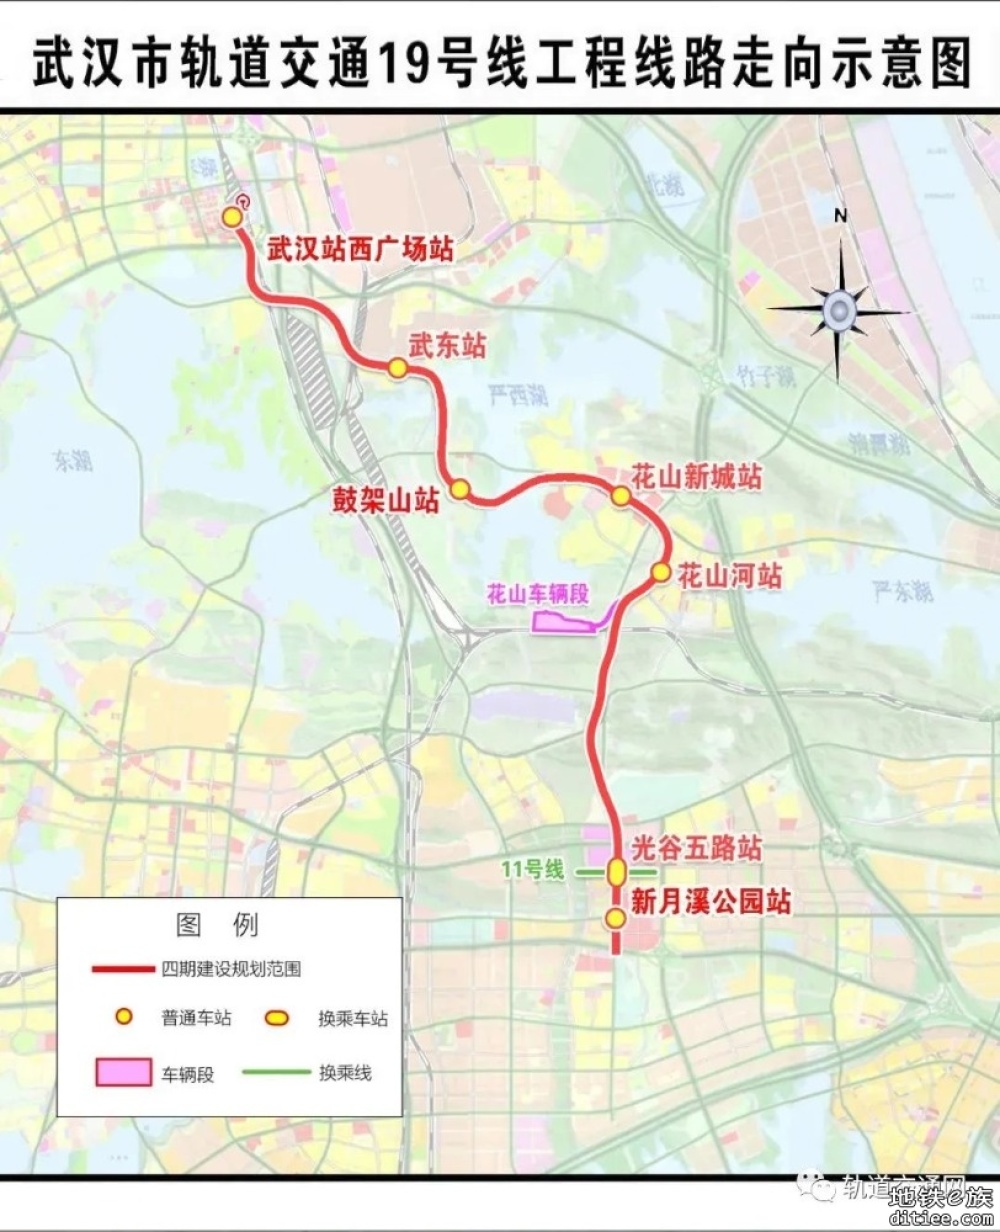 距离开通又近一步！武汉轨道交通19号线工程通过项目工程验收